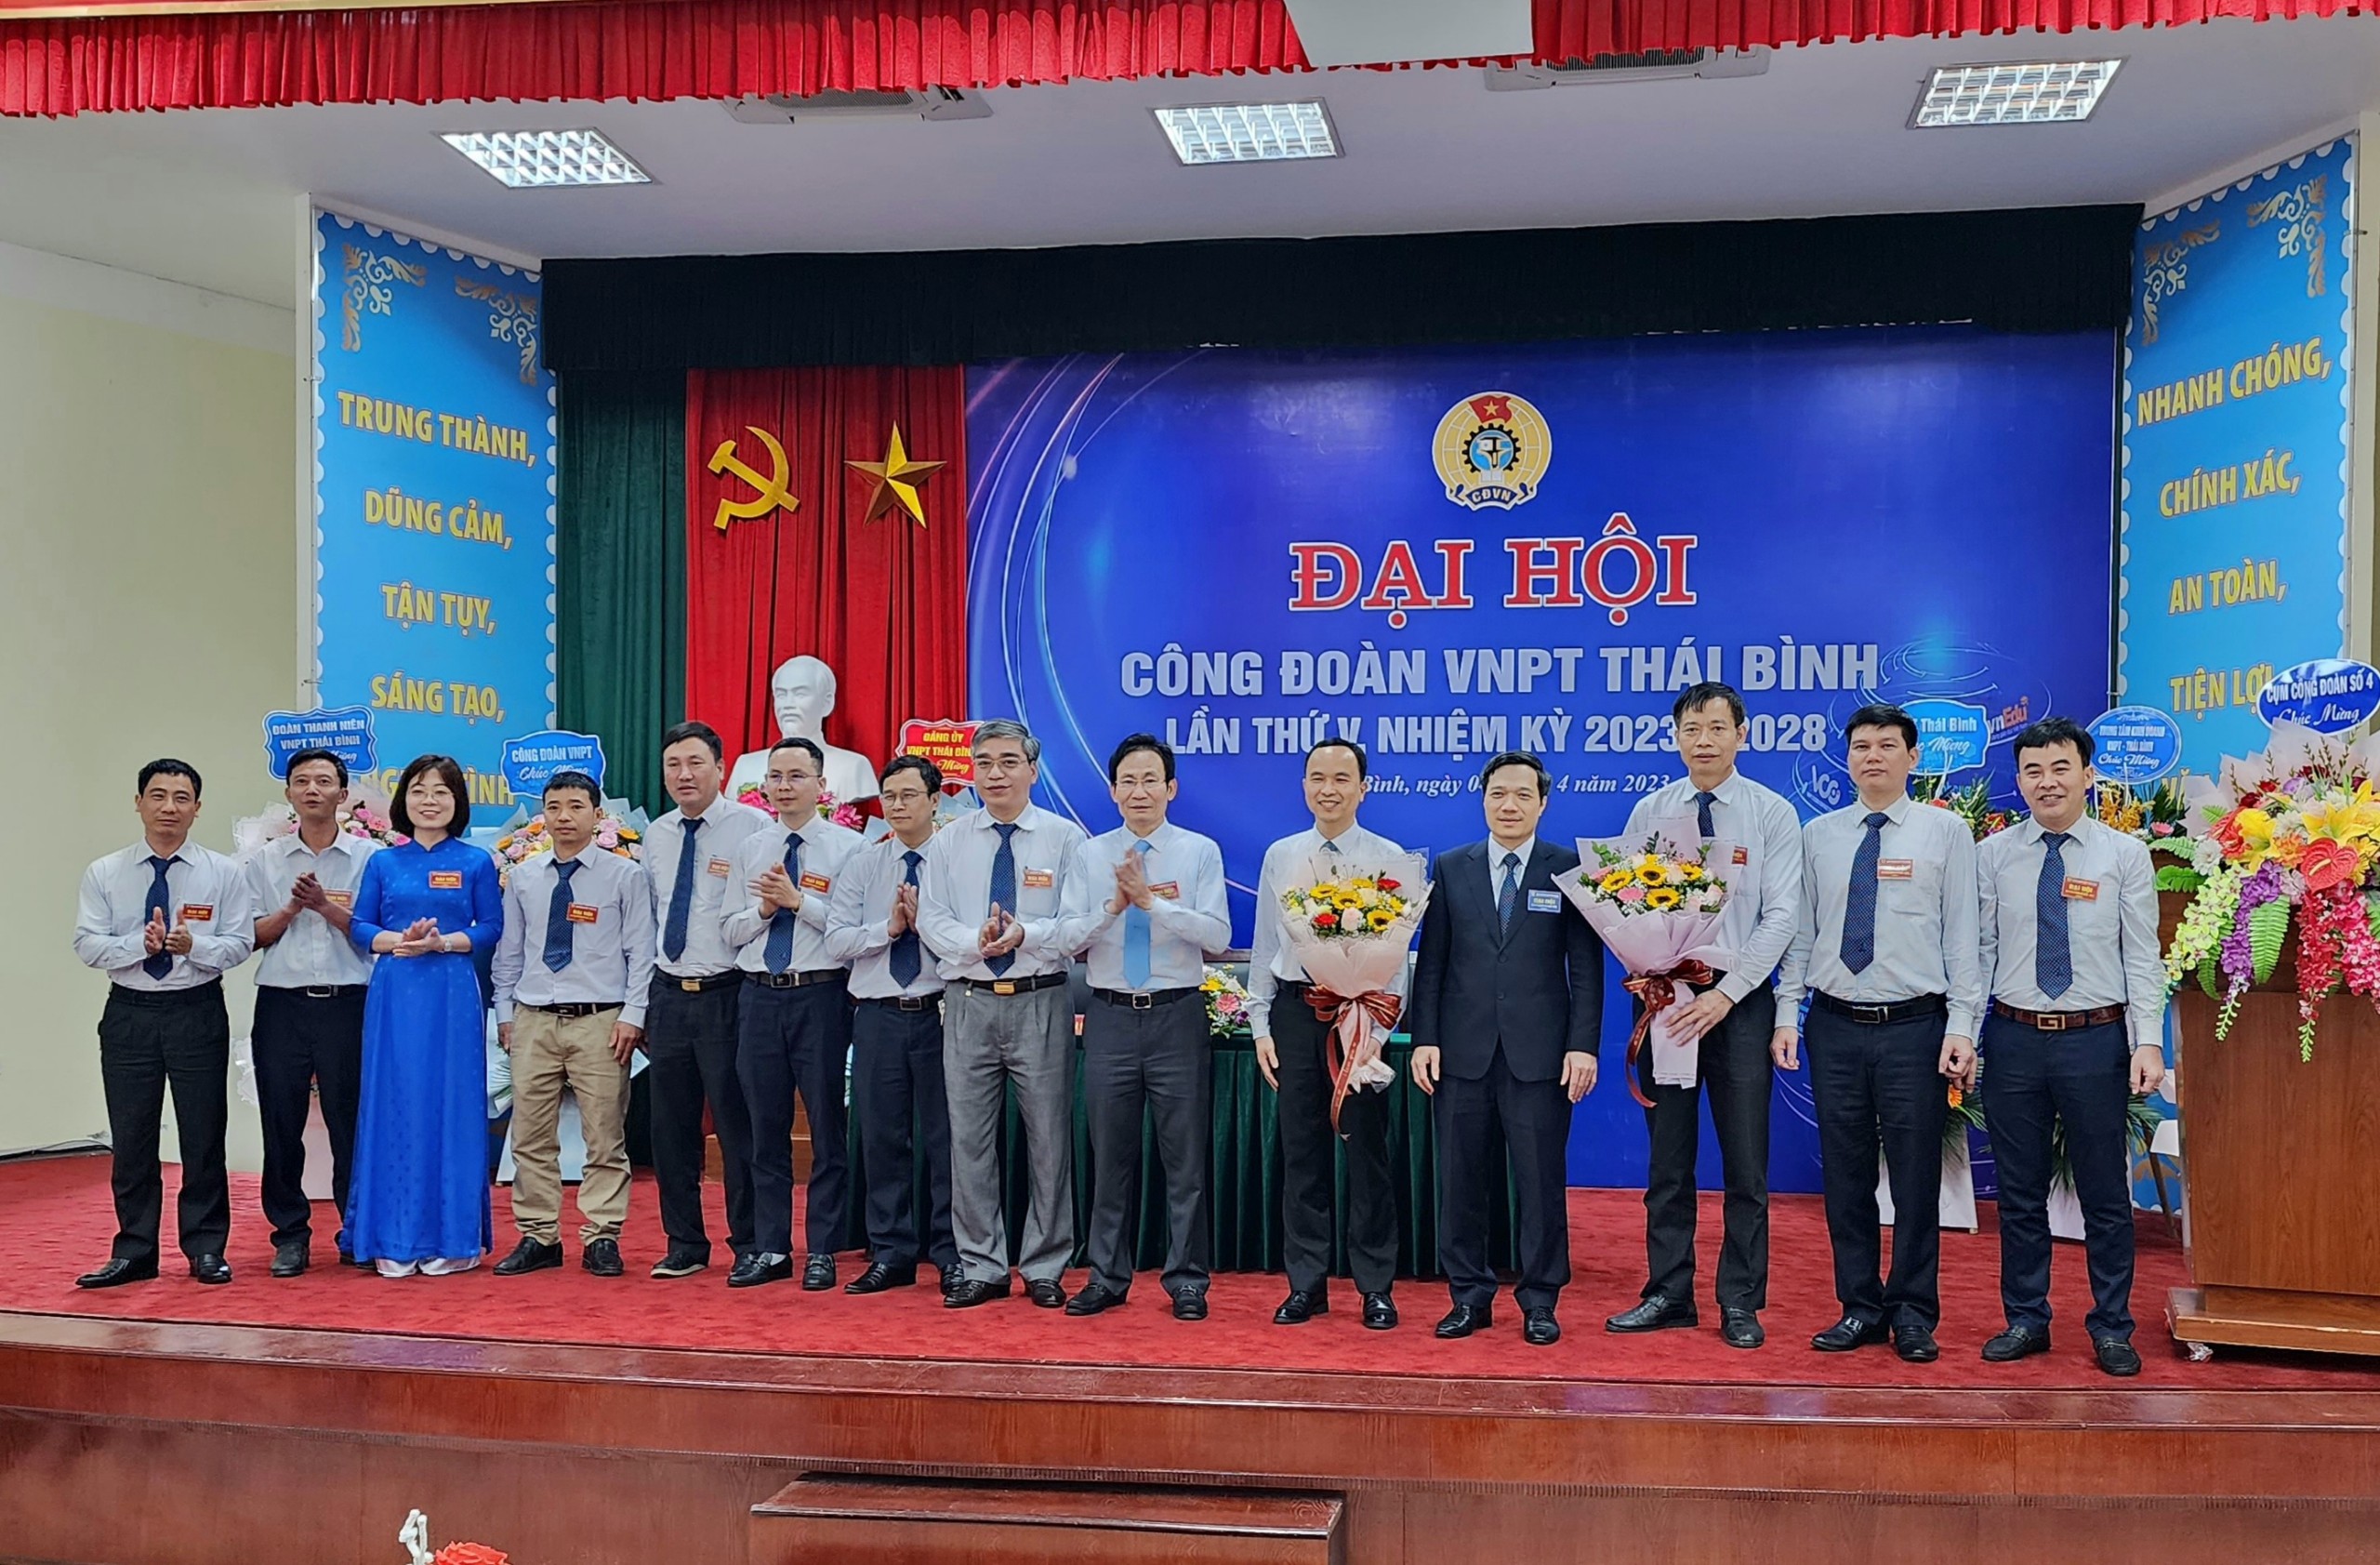 Công đoàn VNPT Thái Bình tổ chức thành công Đại hội Công đoàn nhiệm kỳ 2023 - 2028